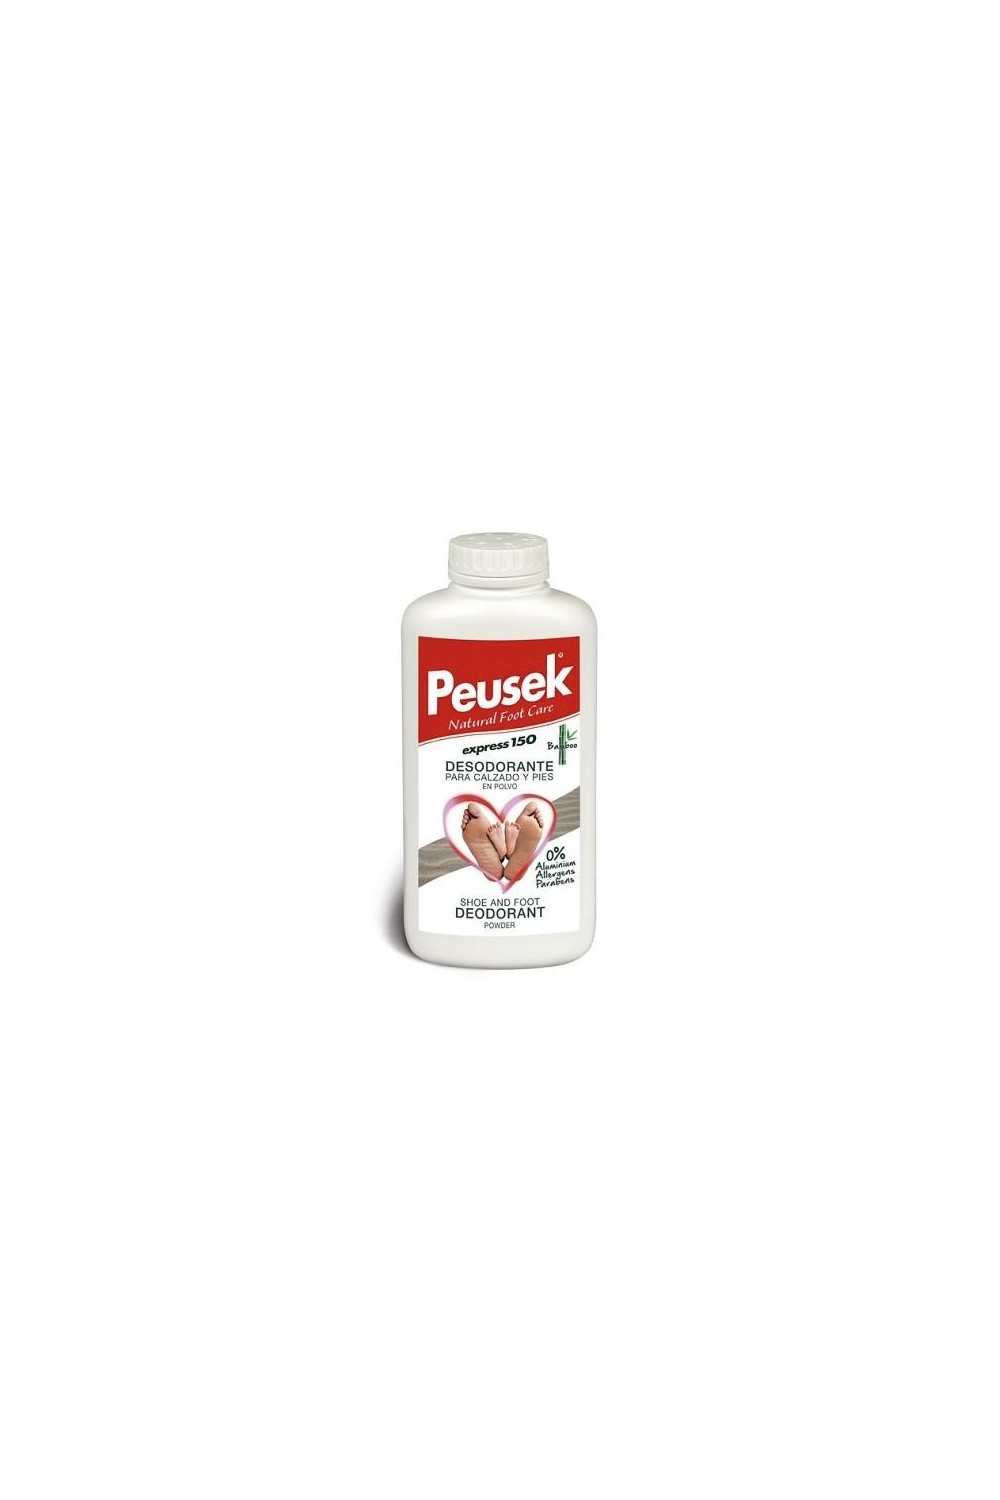 Peusek Express 150 Shoe and Foot Deodorant Powder 150g